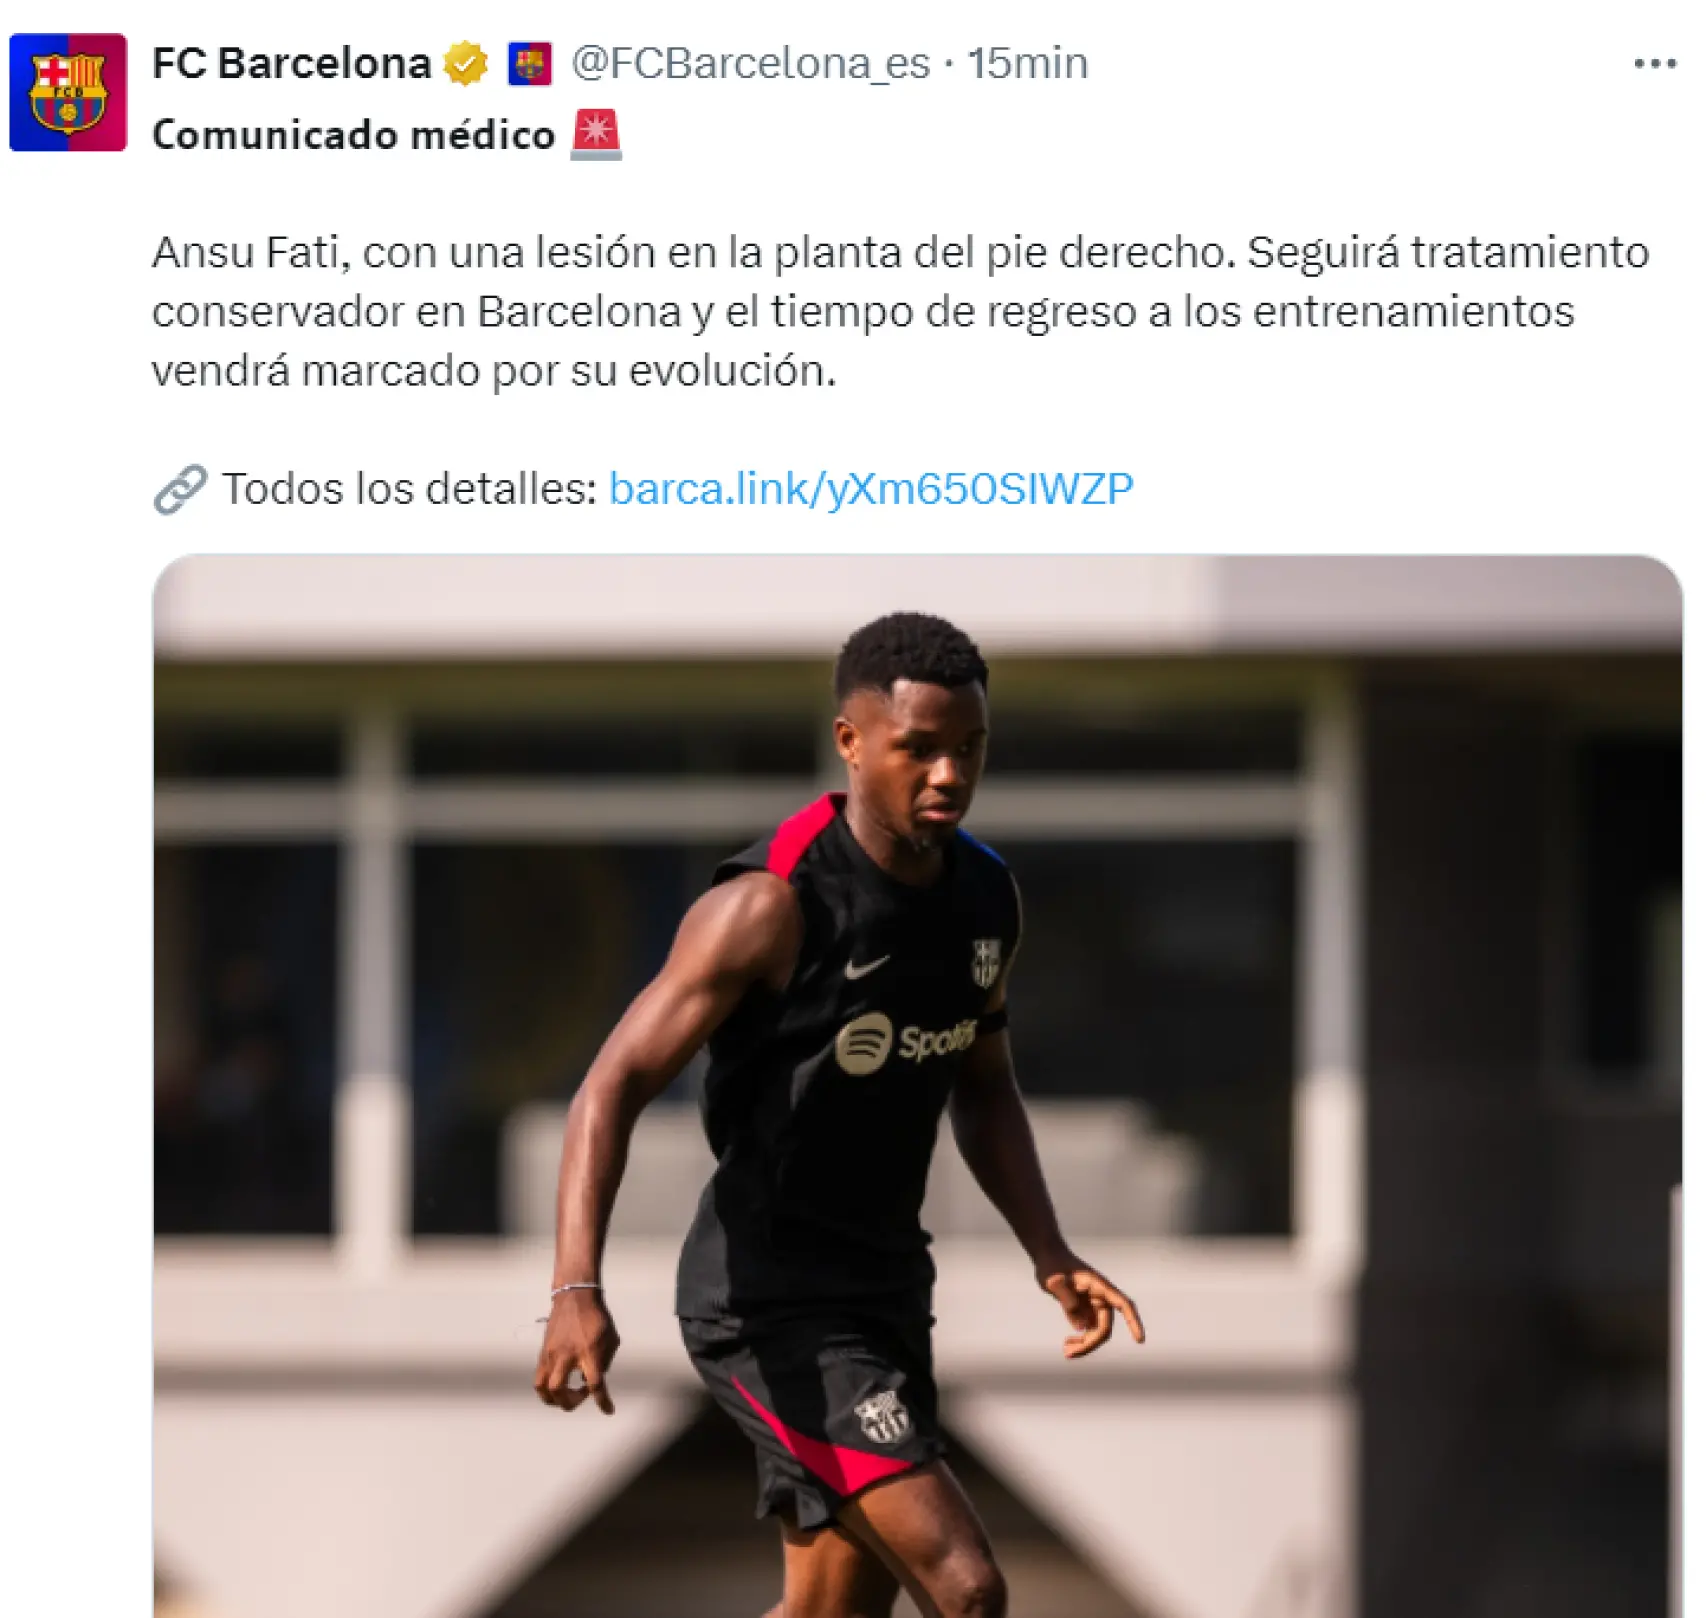 El comunicado médico del Barça sobre la lesión de Ansu Fati